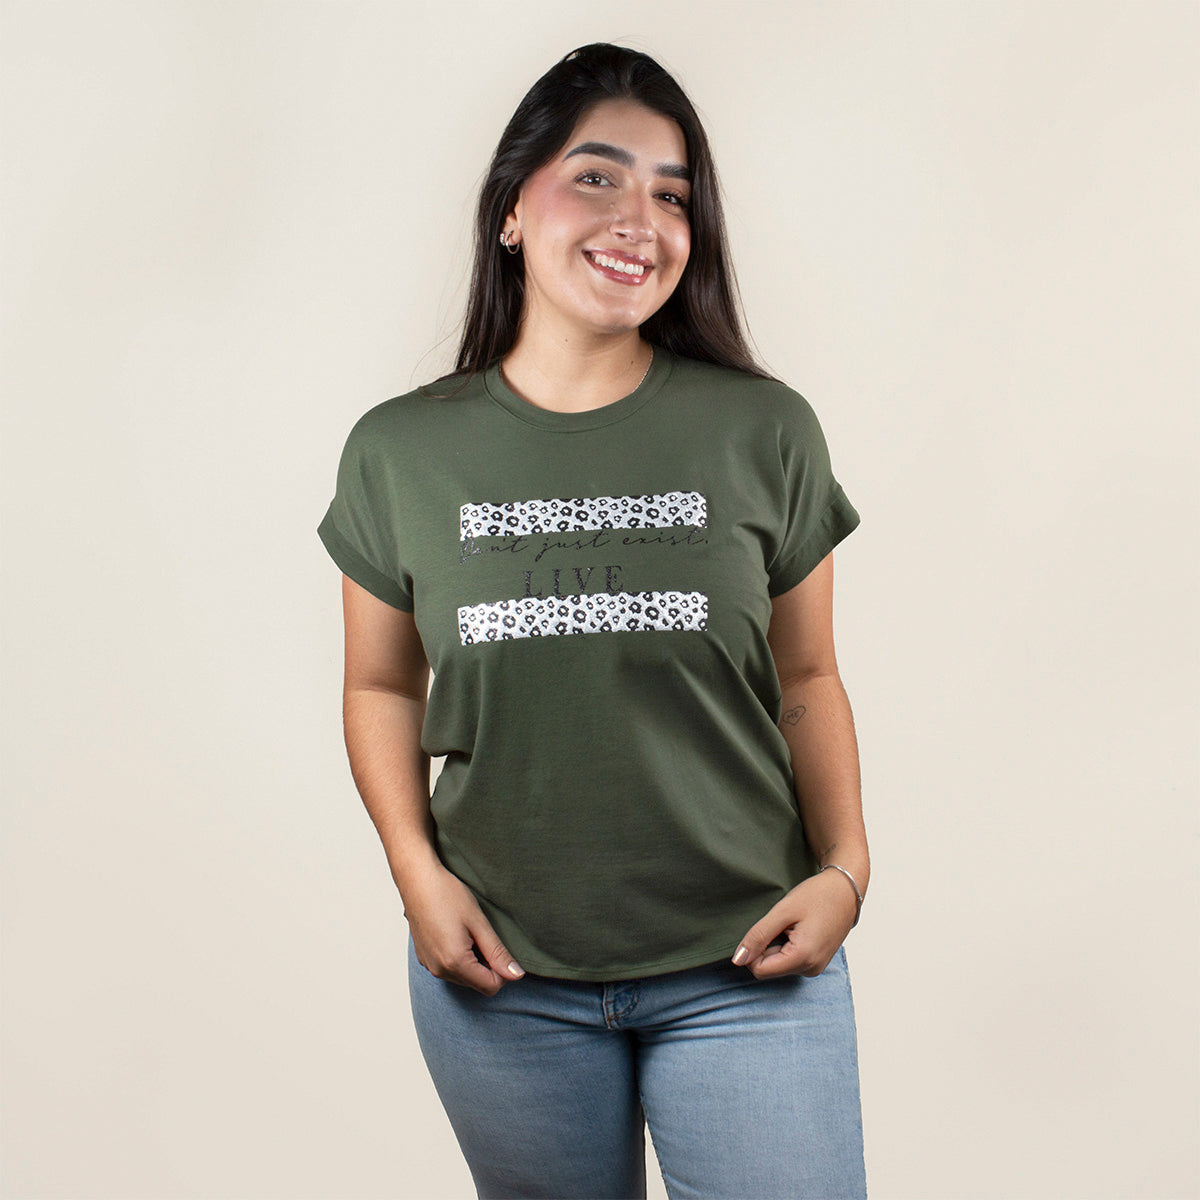 Camiseta básica color verde militar con estampado animal print